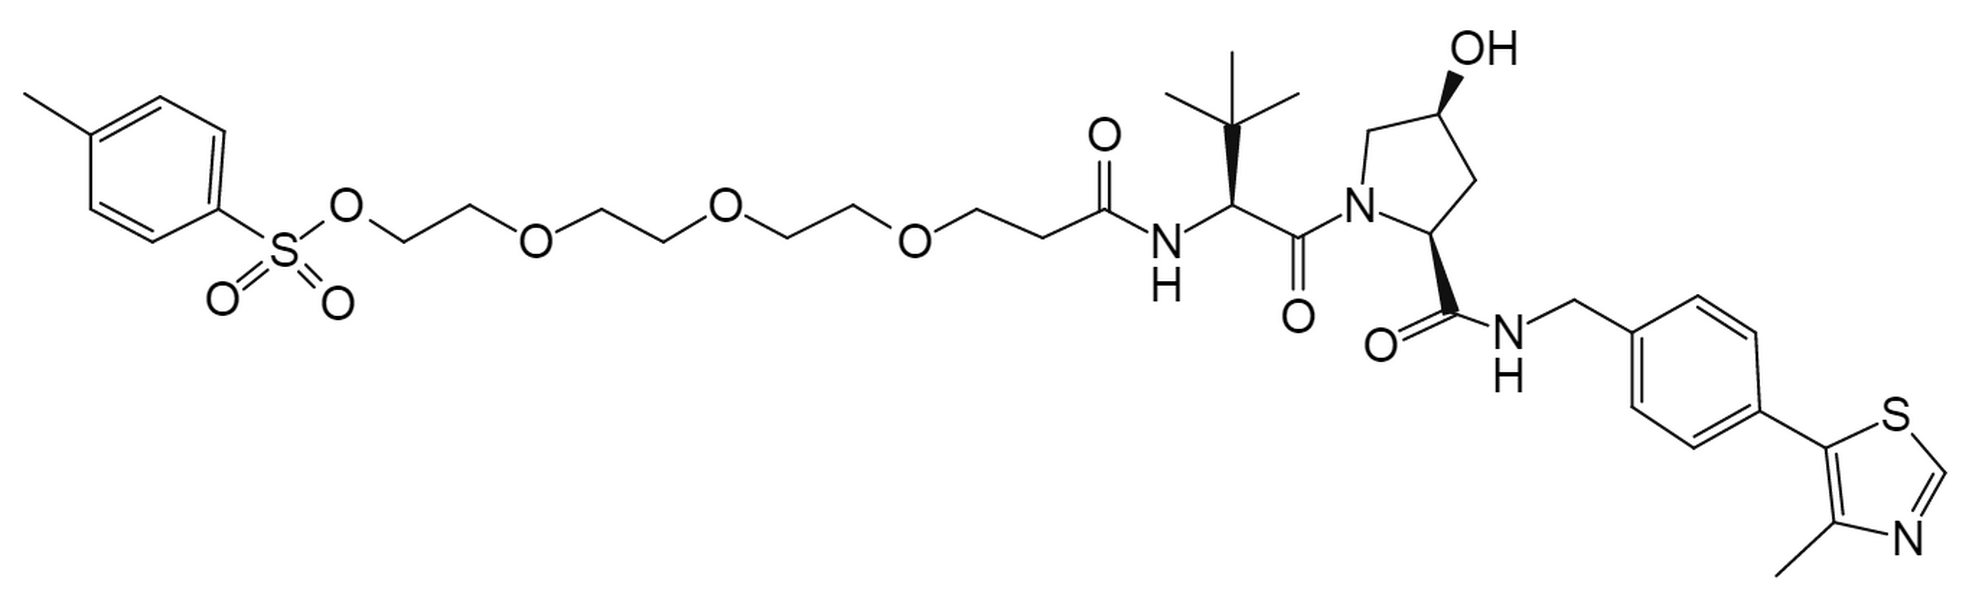 (S, R, S)-AHPC-PEG4-tosyl